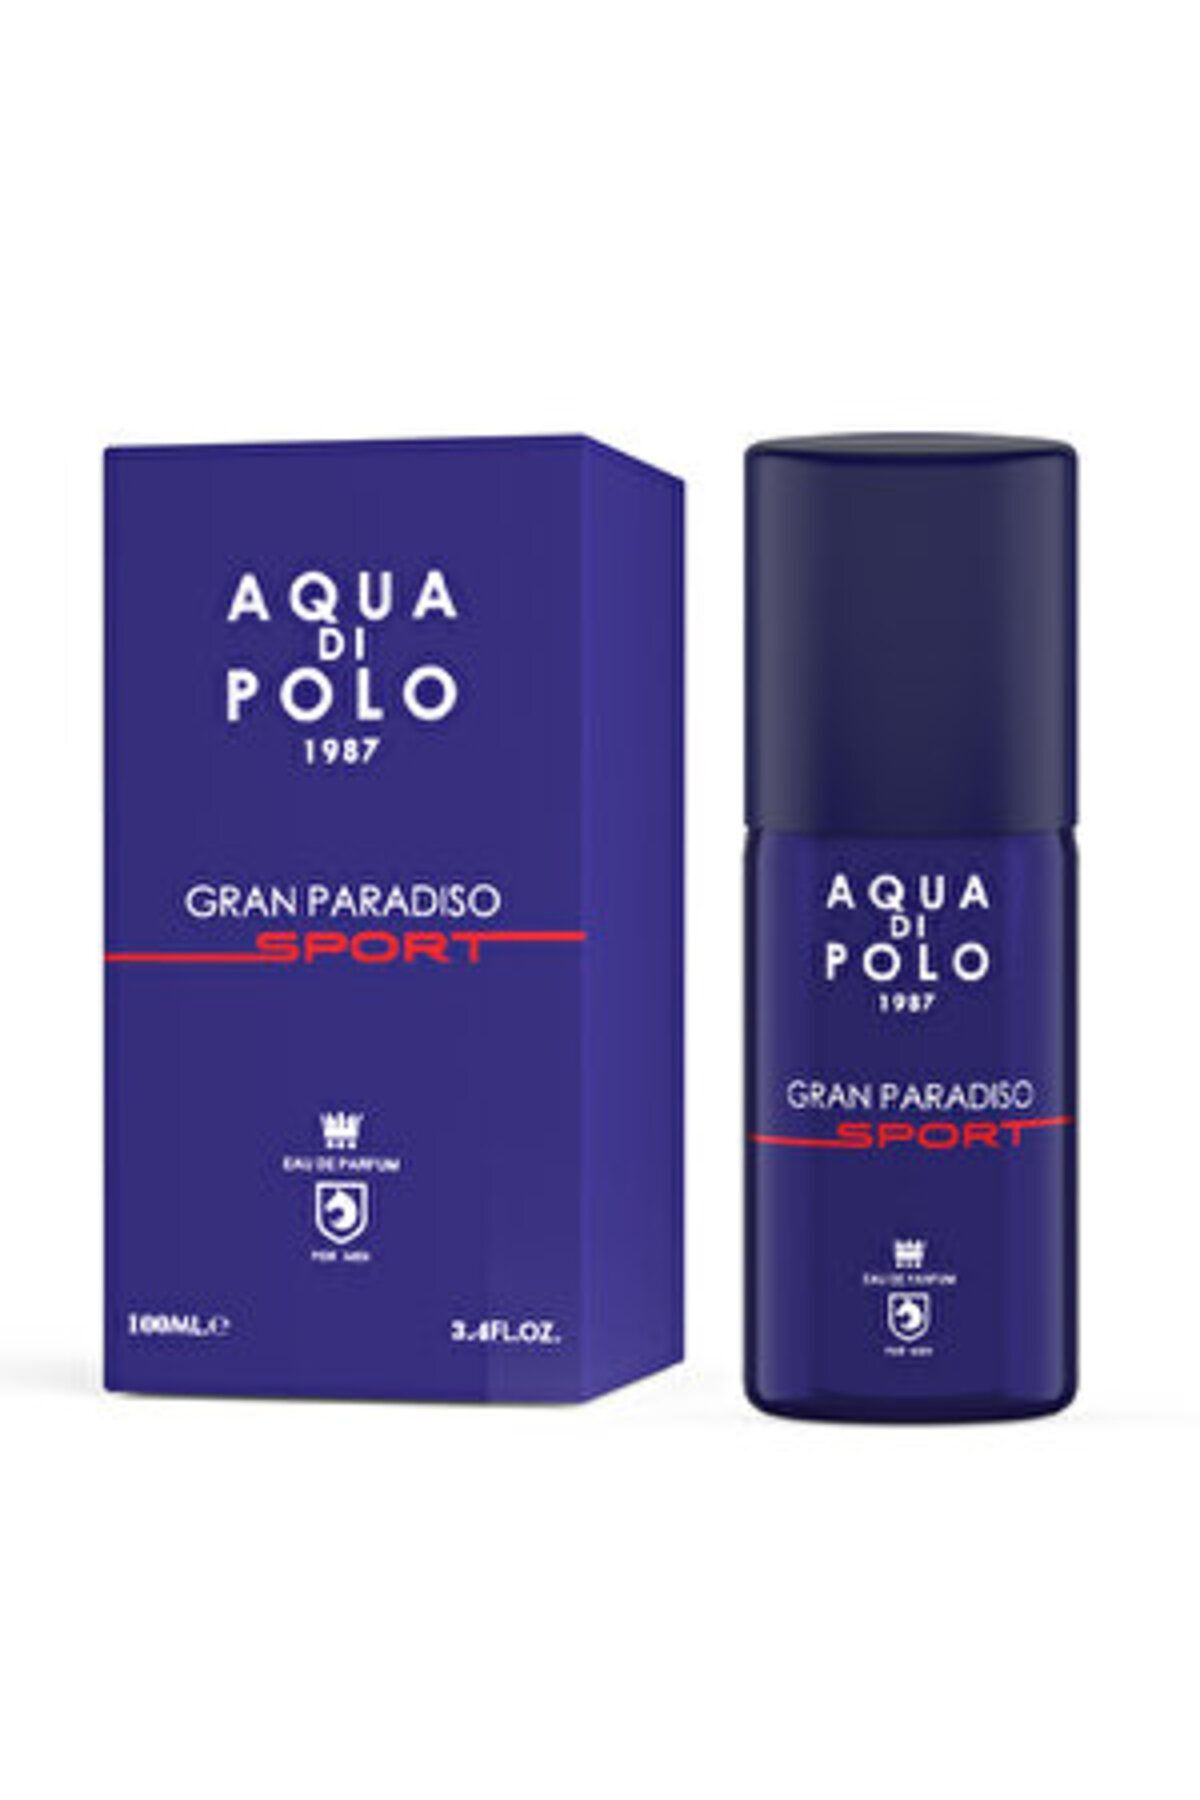 Aqua ( 1 ADET ) Aqua di Polo 1987 Gran Paradiso Sport EDP Erkek Parfüm 100 ml